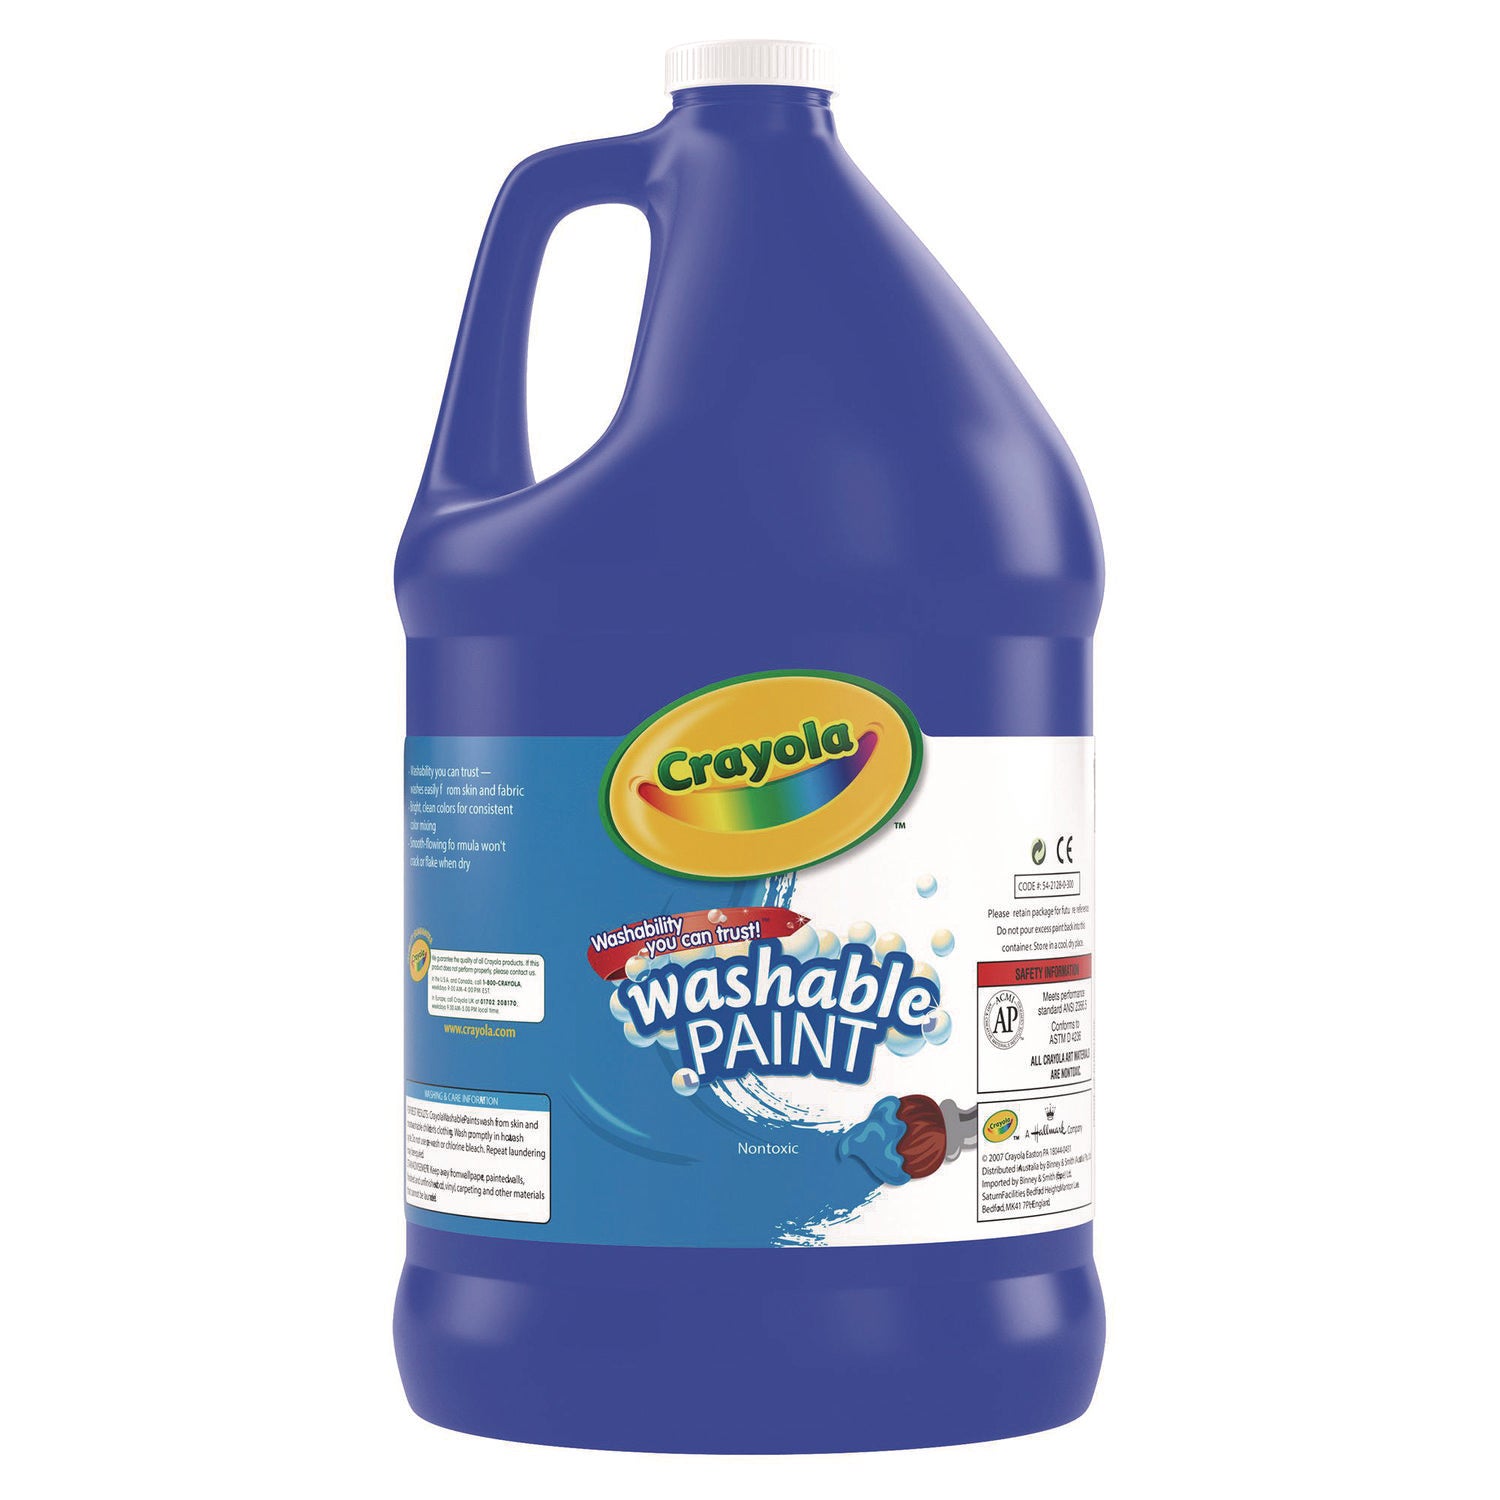 Washable Paint, Blue, 1 gal Bottle - 6